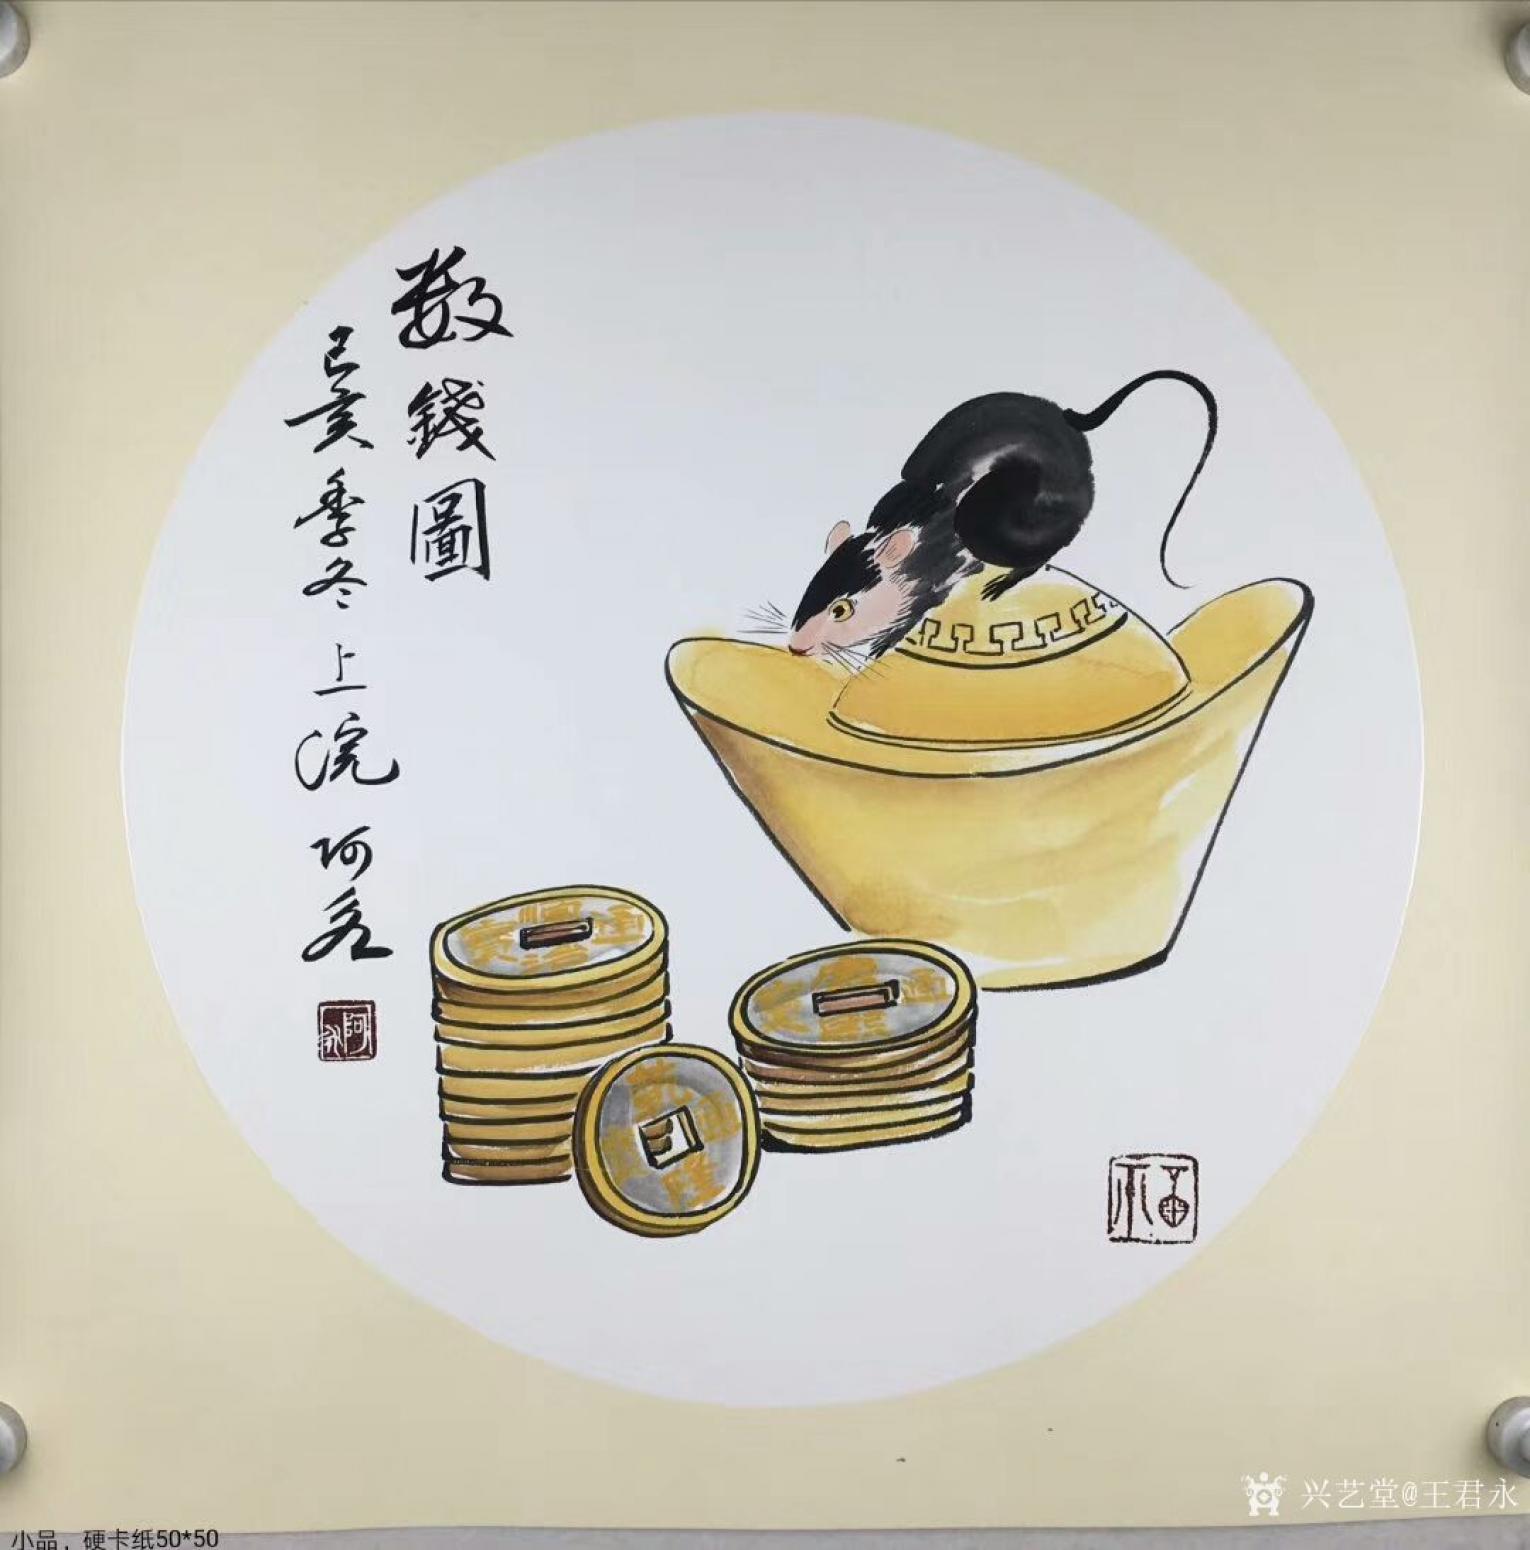 王君永国画作品《动物老鼠-数钱图》【图0】